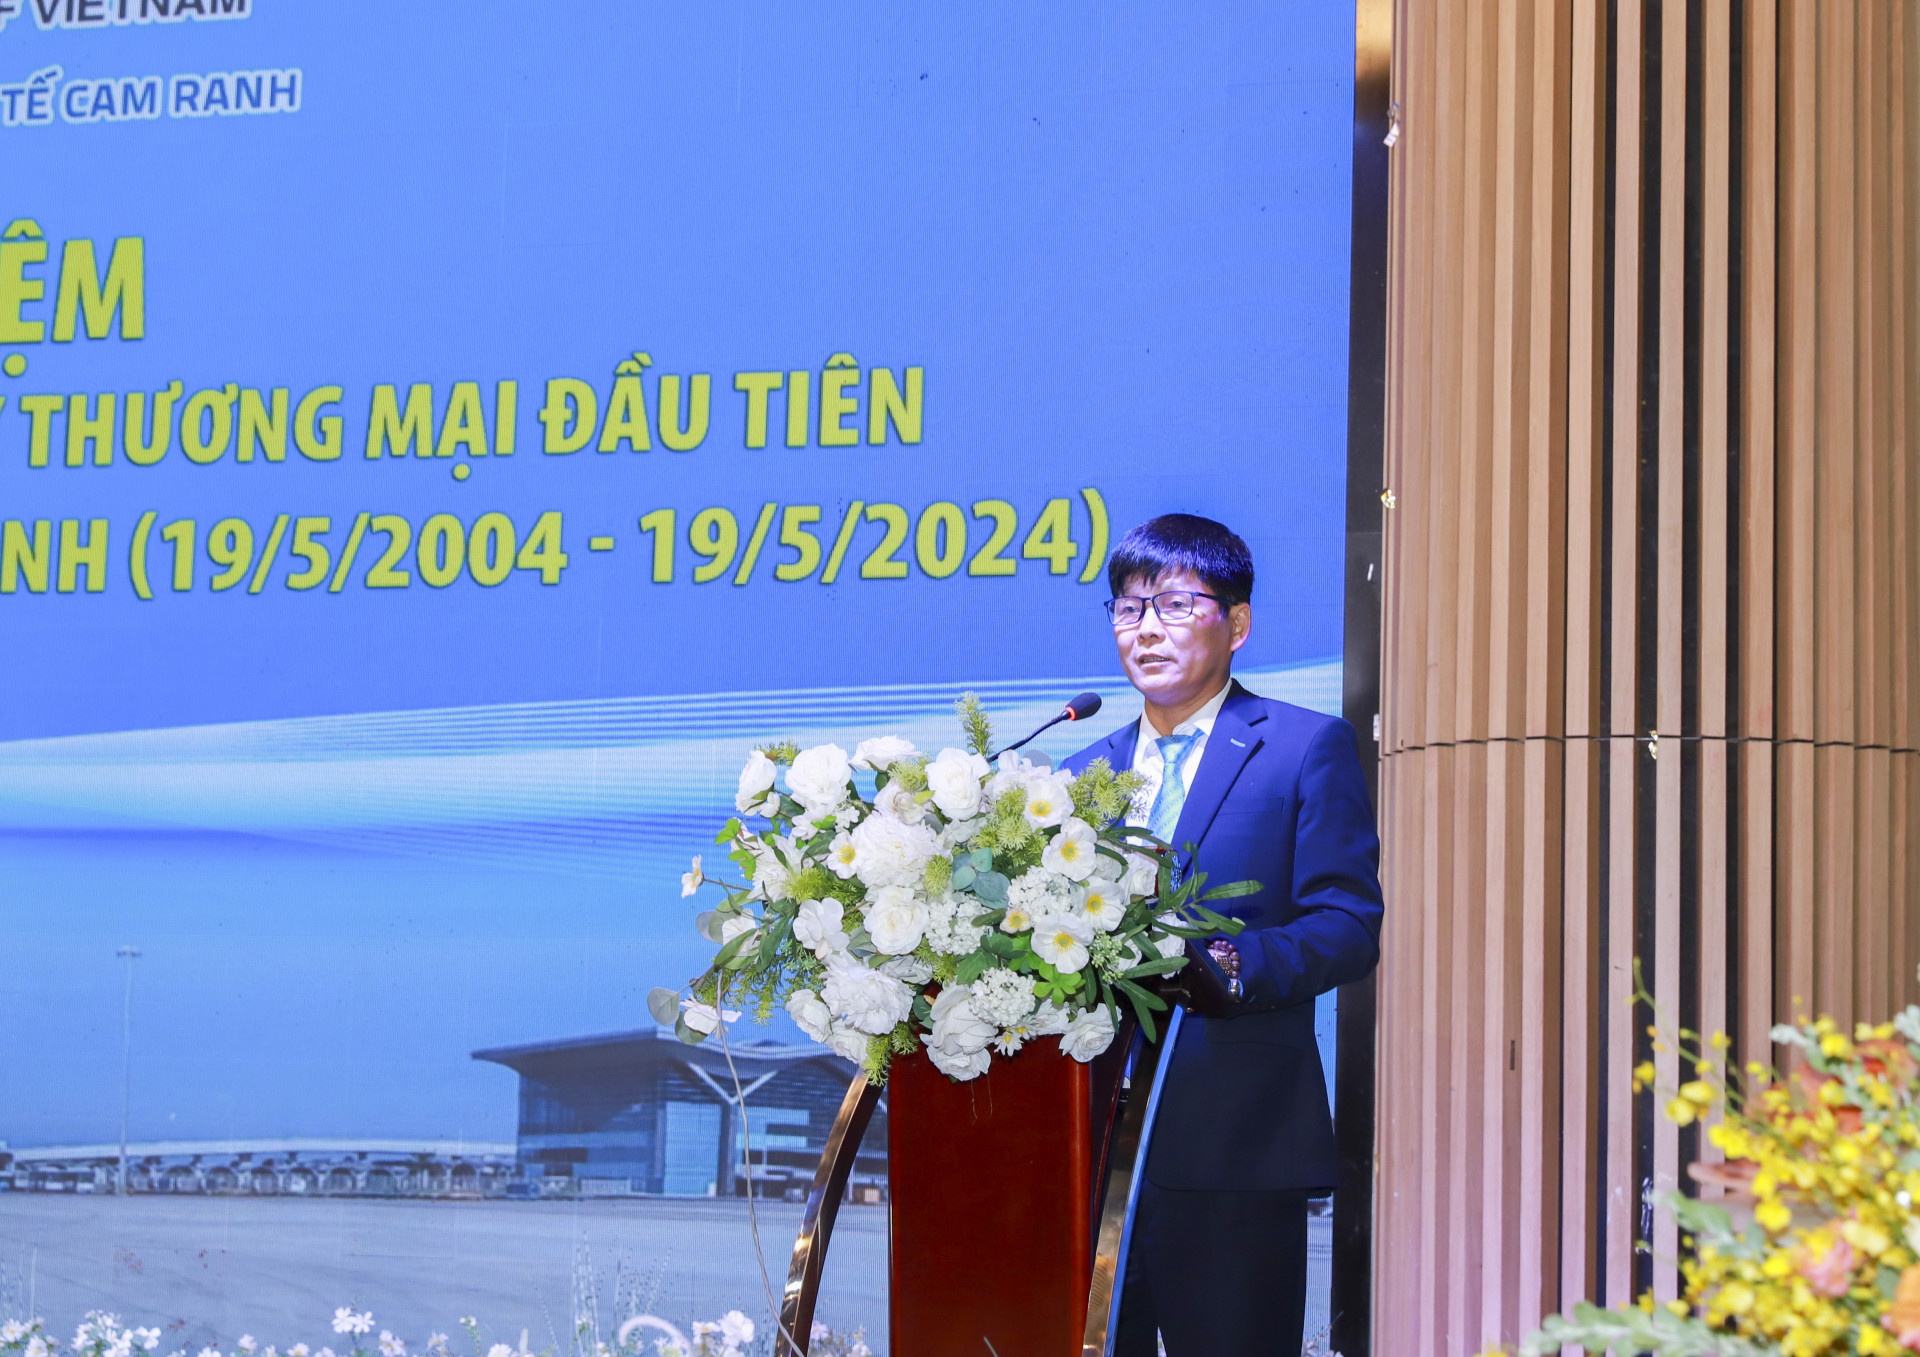 Ông Nguyễn Bá Quân - Giám đốc Cảnh Hàng không quốc tế Cam Ranh dọc diễn văn tại lễ kỷ niệm.